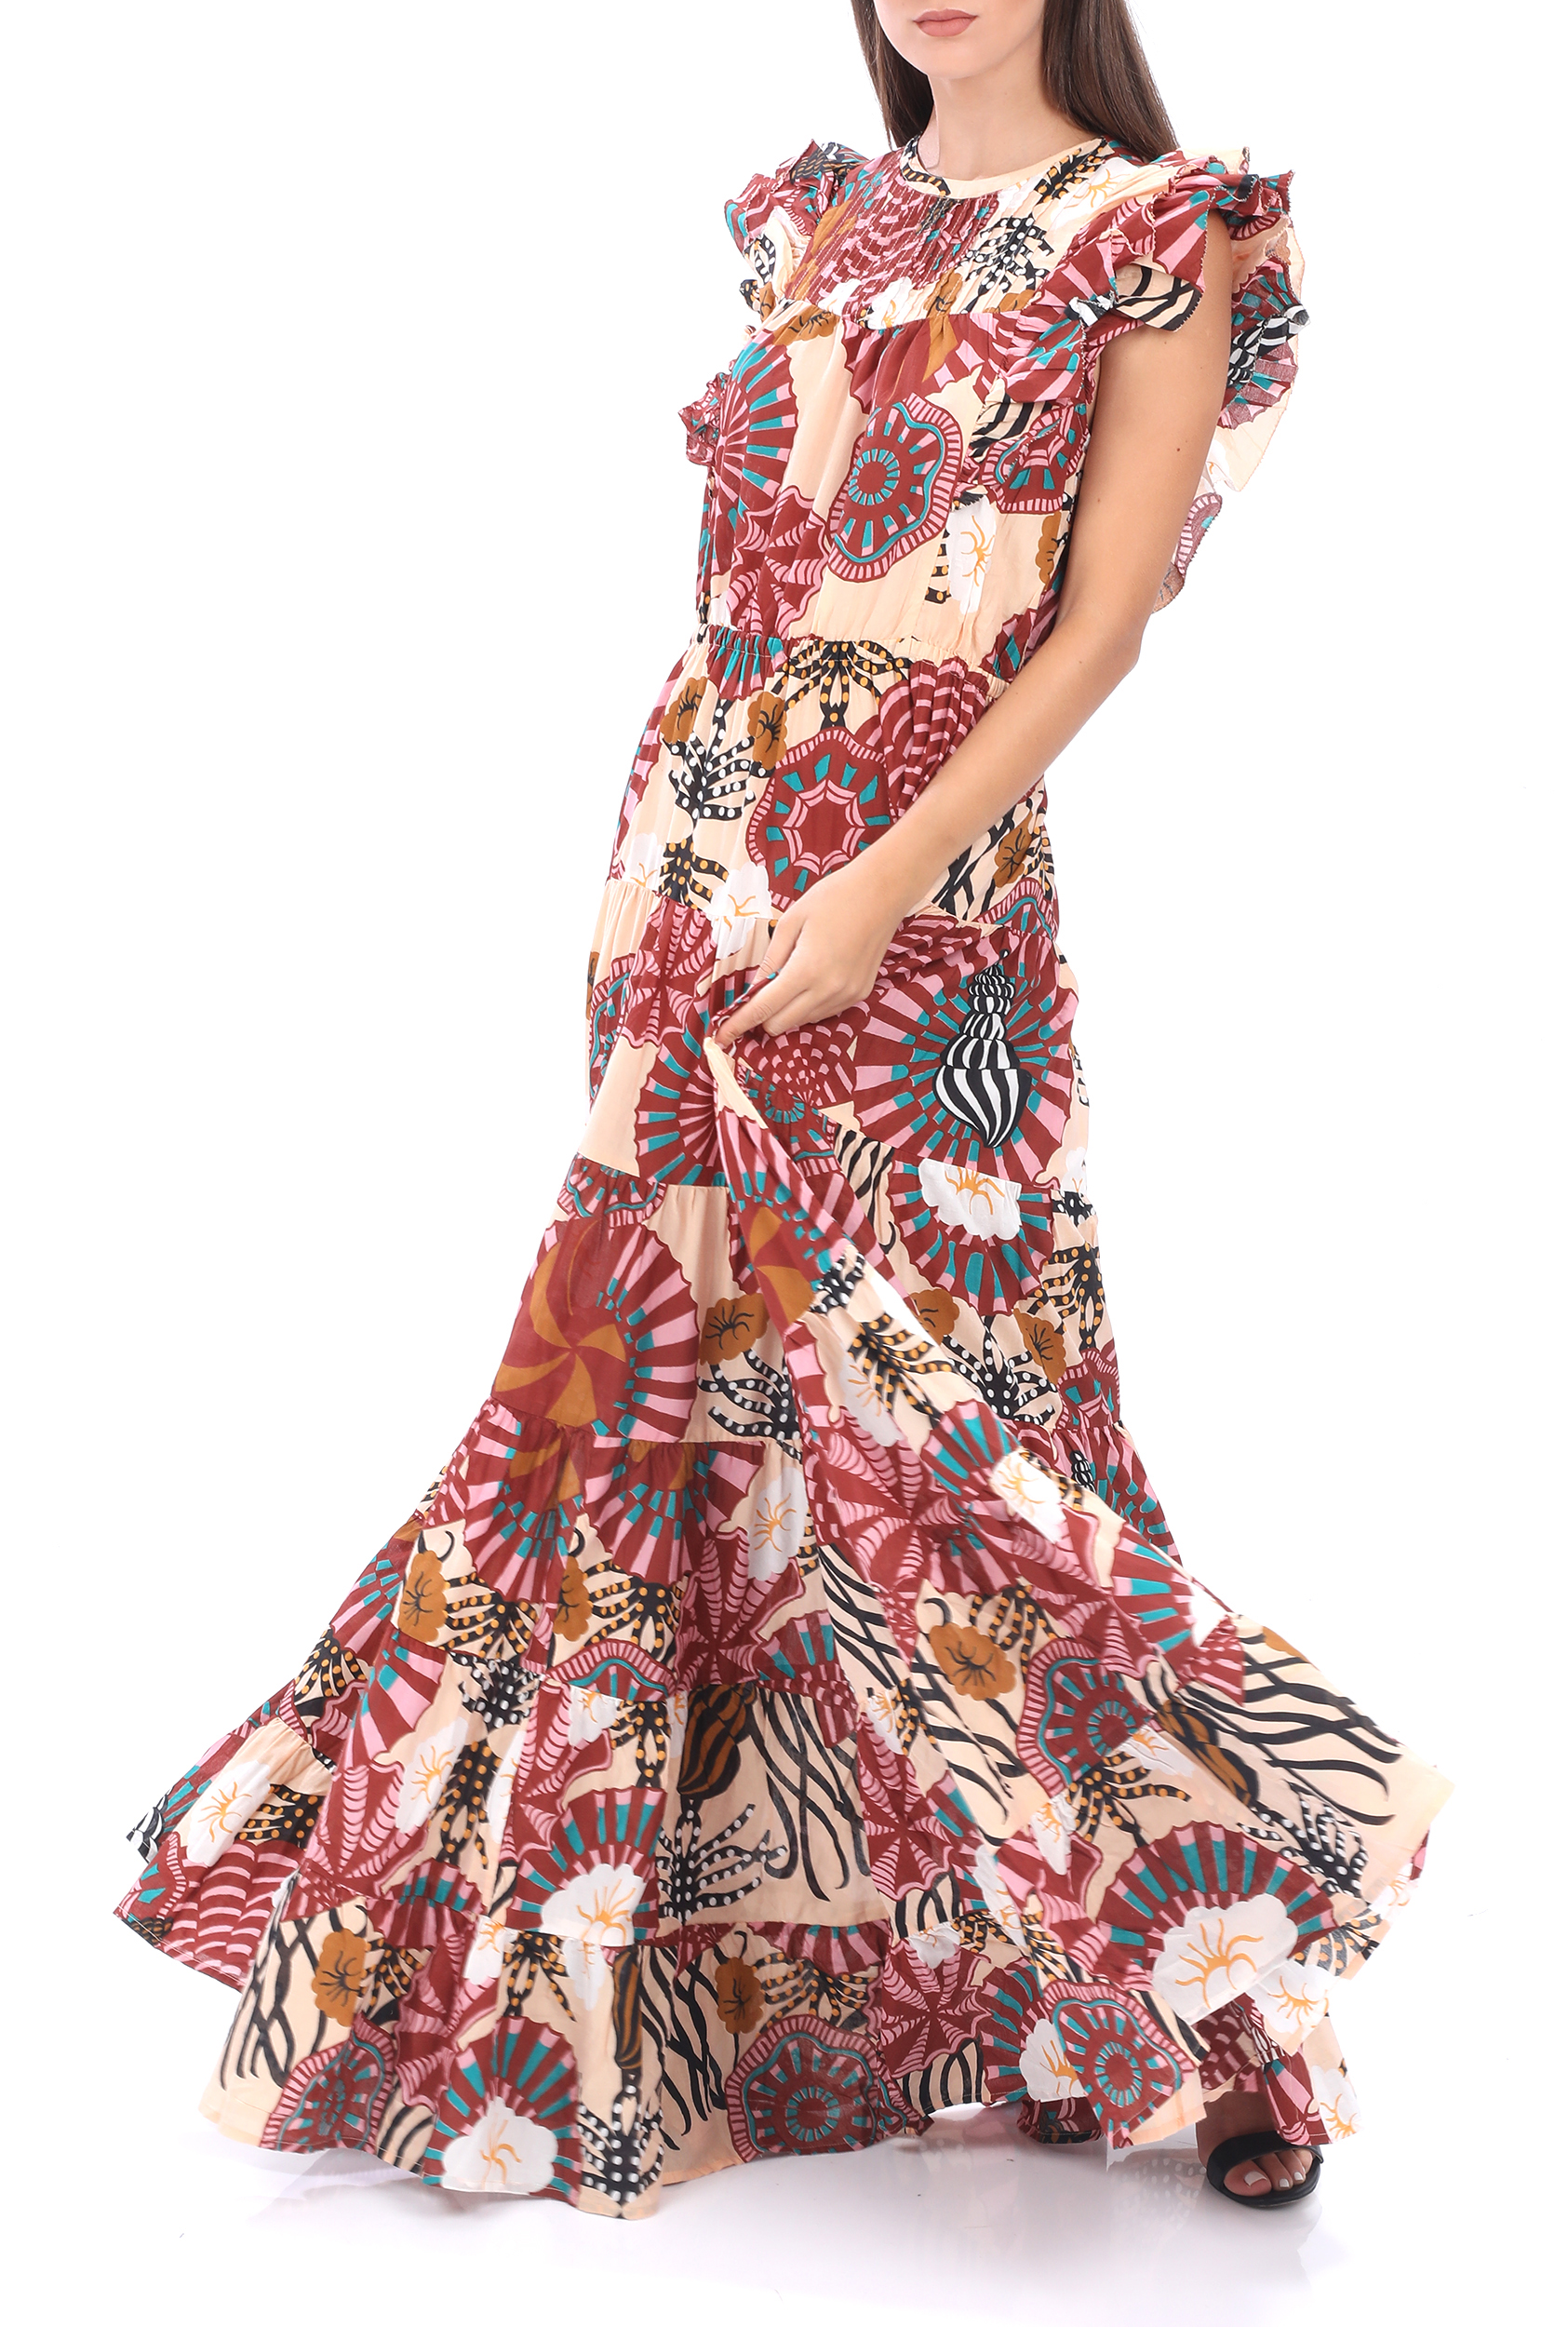 Γυναικεία/Ρούχα/Φόρεματα/Μάξι SCOTCH & SODA - Γυναικείο maxi φόρεμα SCOTCH & SODA Summer dress in print ροζ κόκκινο